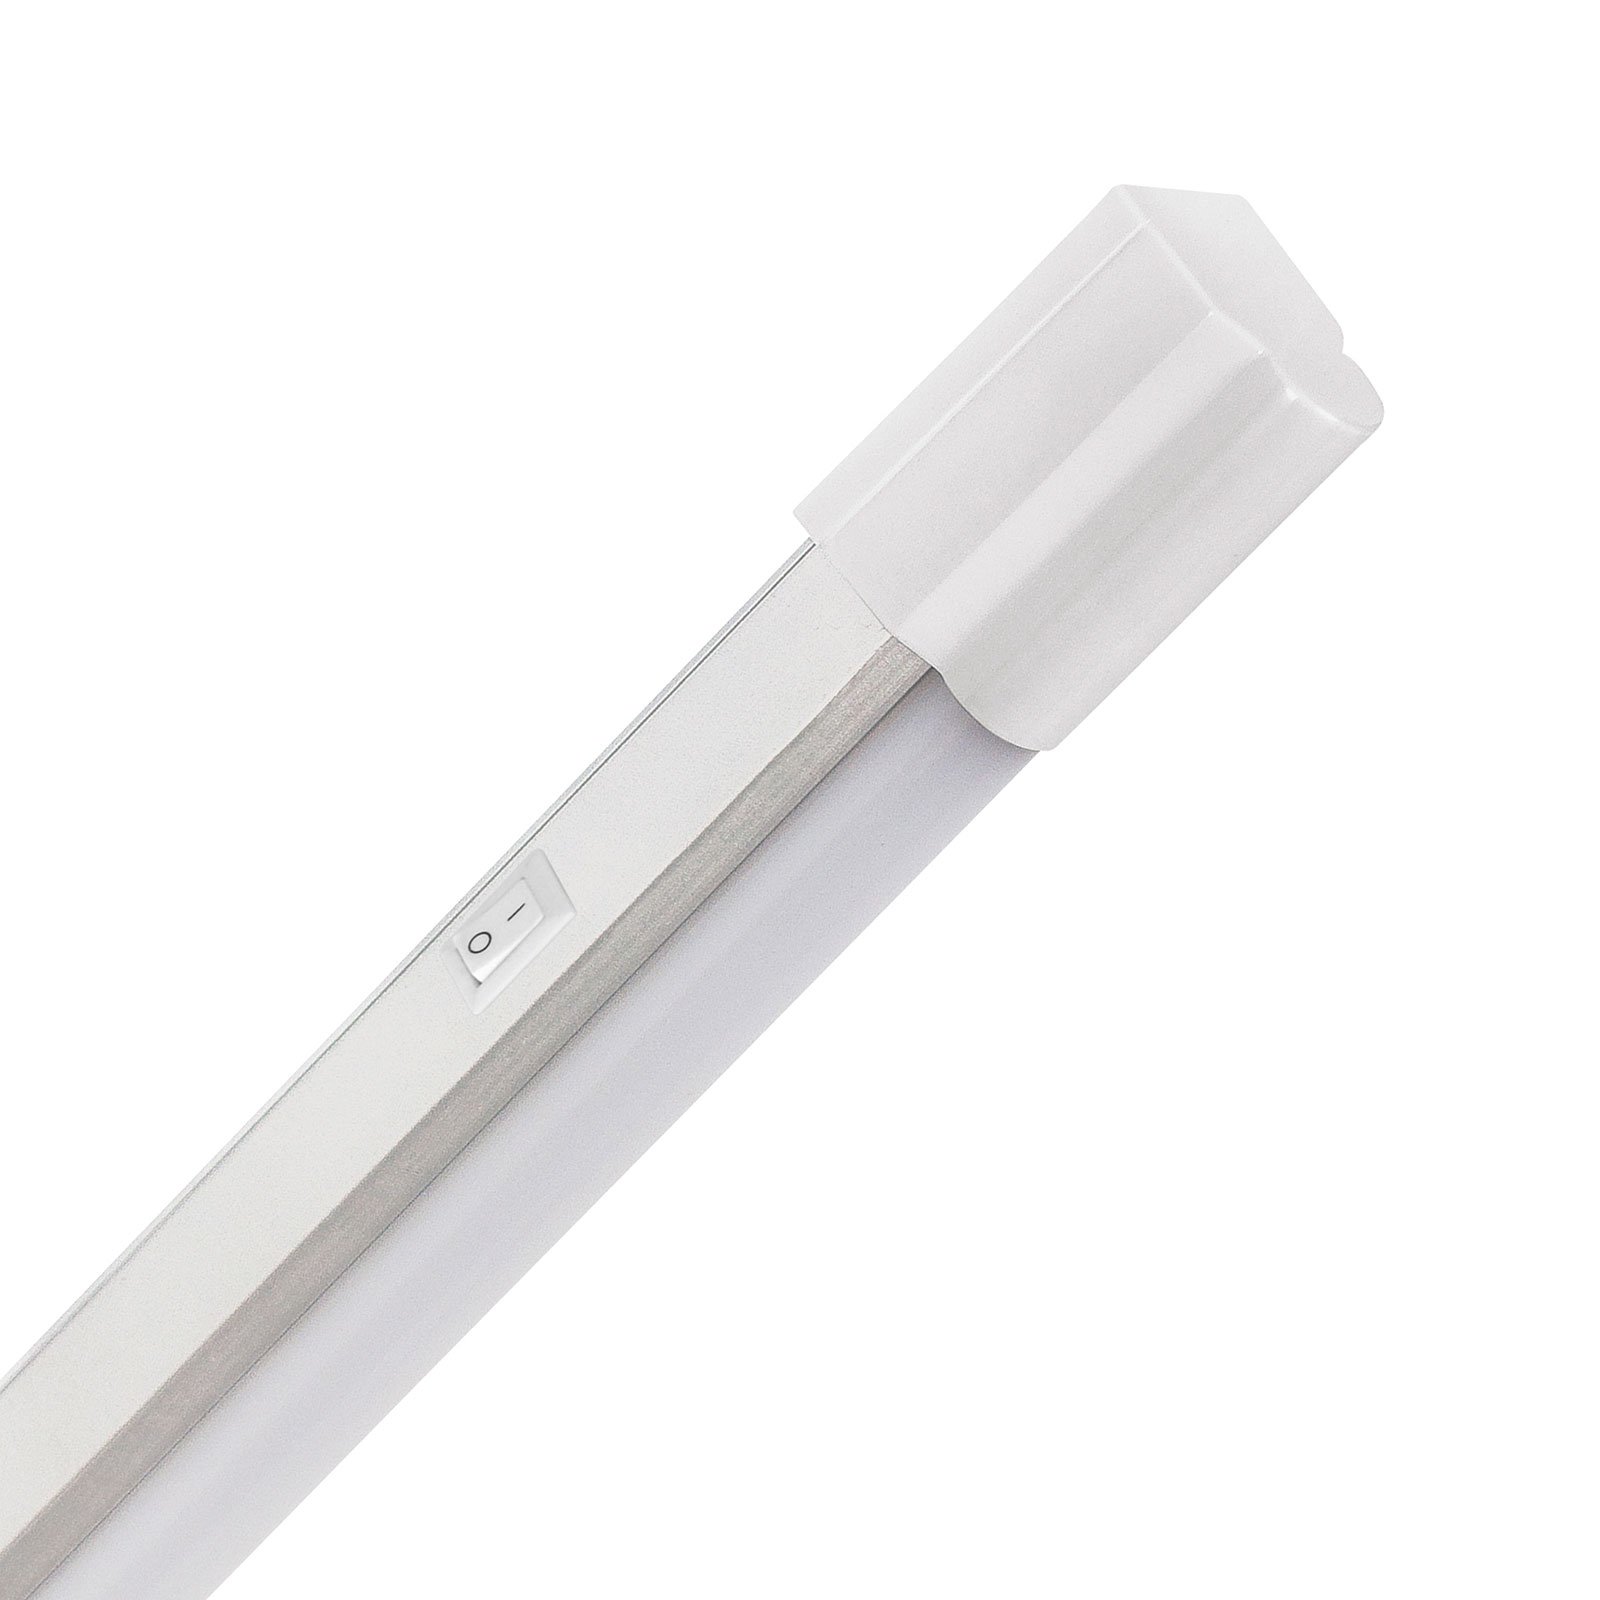 LED ugradna rasvjeta Arax 45, 42,6 cm, 4 W